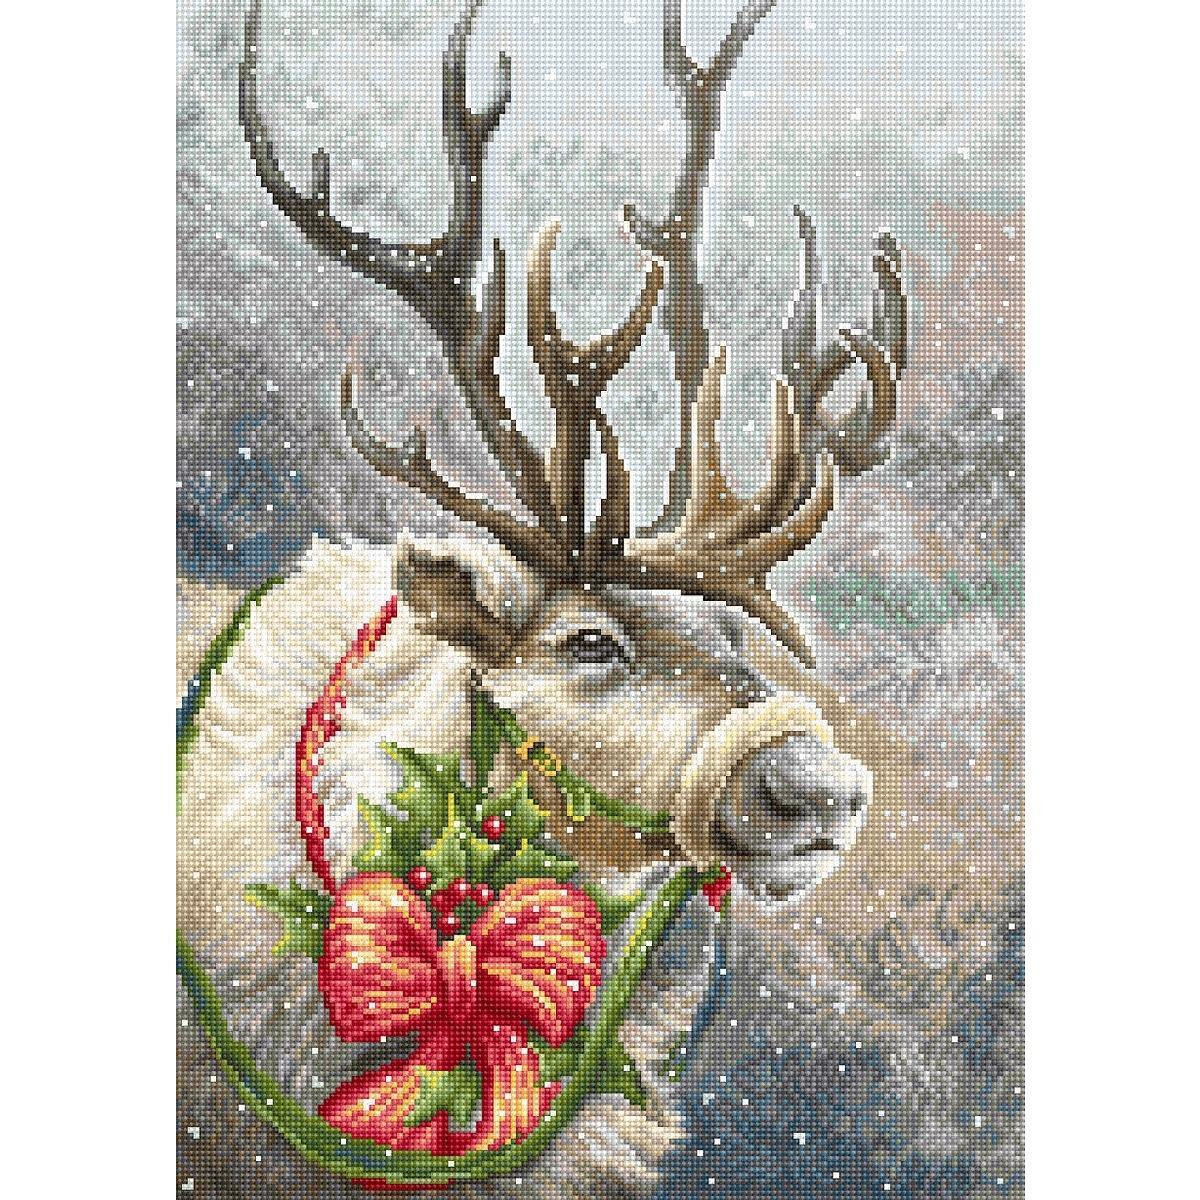 Immagine festosa di una renna con grandi corna decorate...